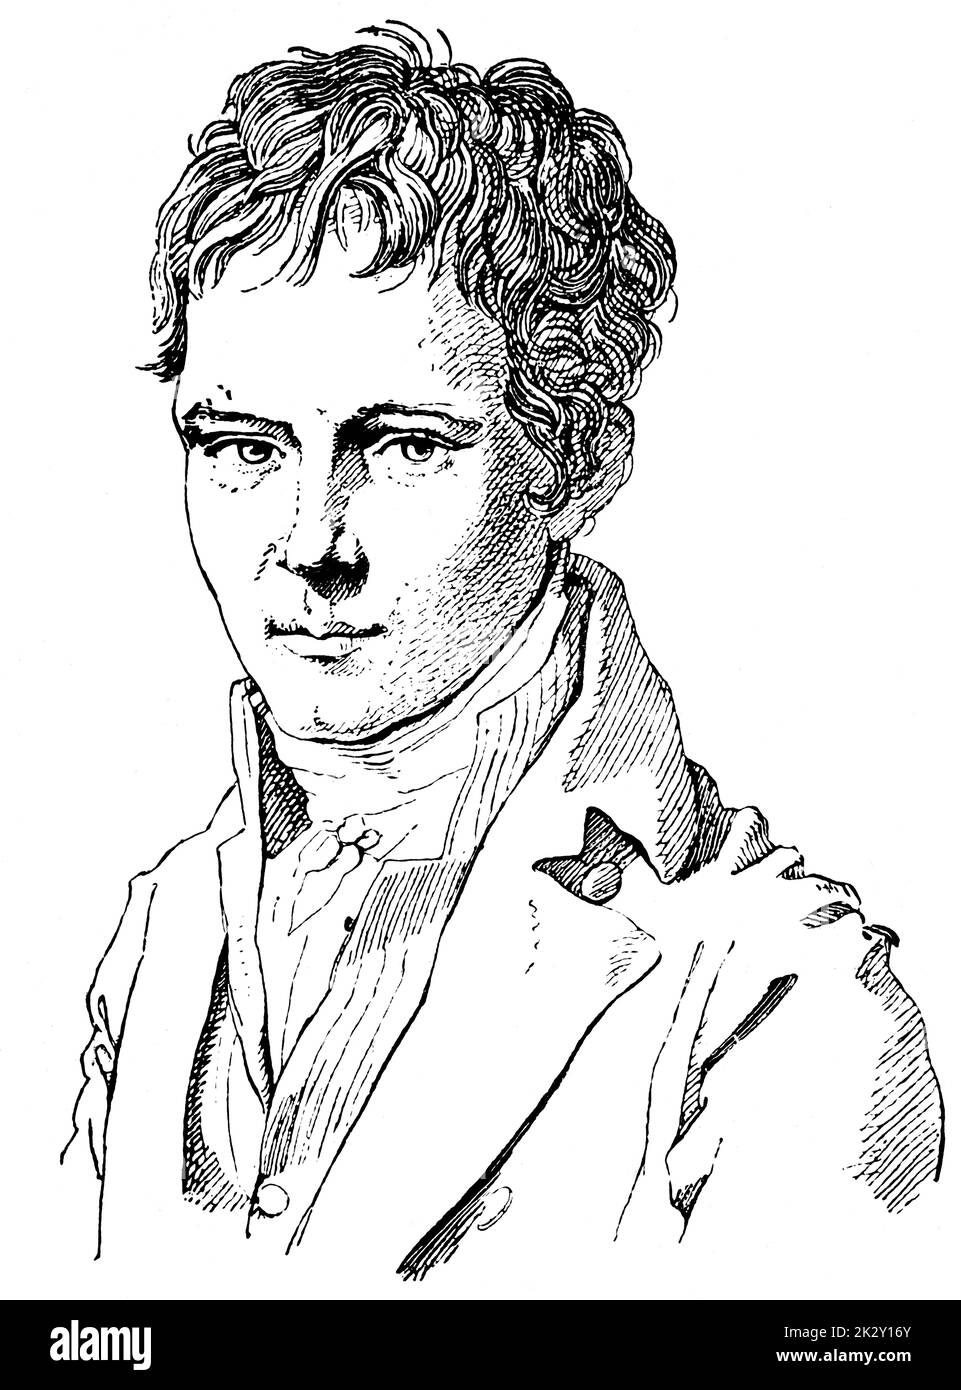 Portrait d'Alexander von Humboldt (jeunesse) - un savant allemand, géographe, naturaliste, explorateur et promoteur de la philosophie et de la science romantiques. Illustration du 19e siècle. Arrière-plan blanc. Banque D'Images